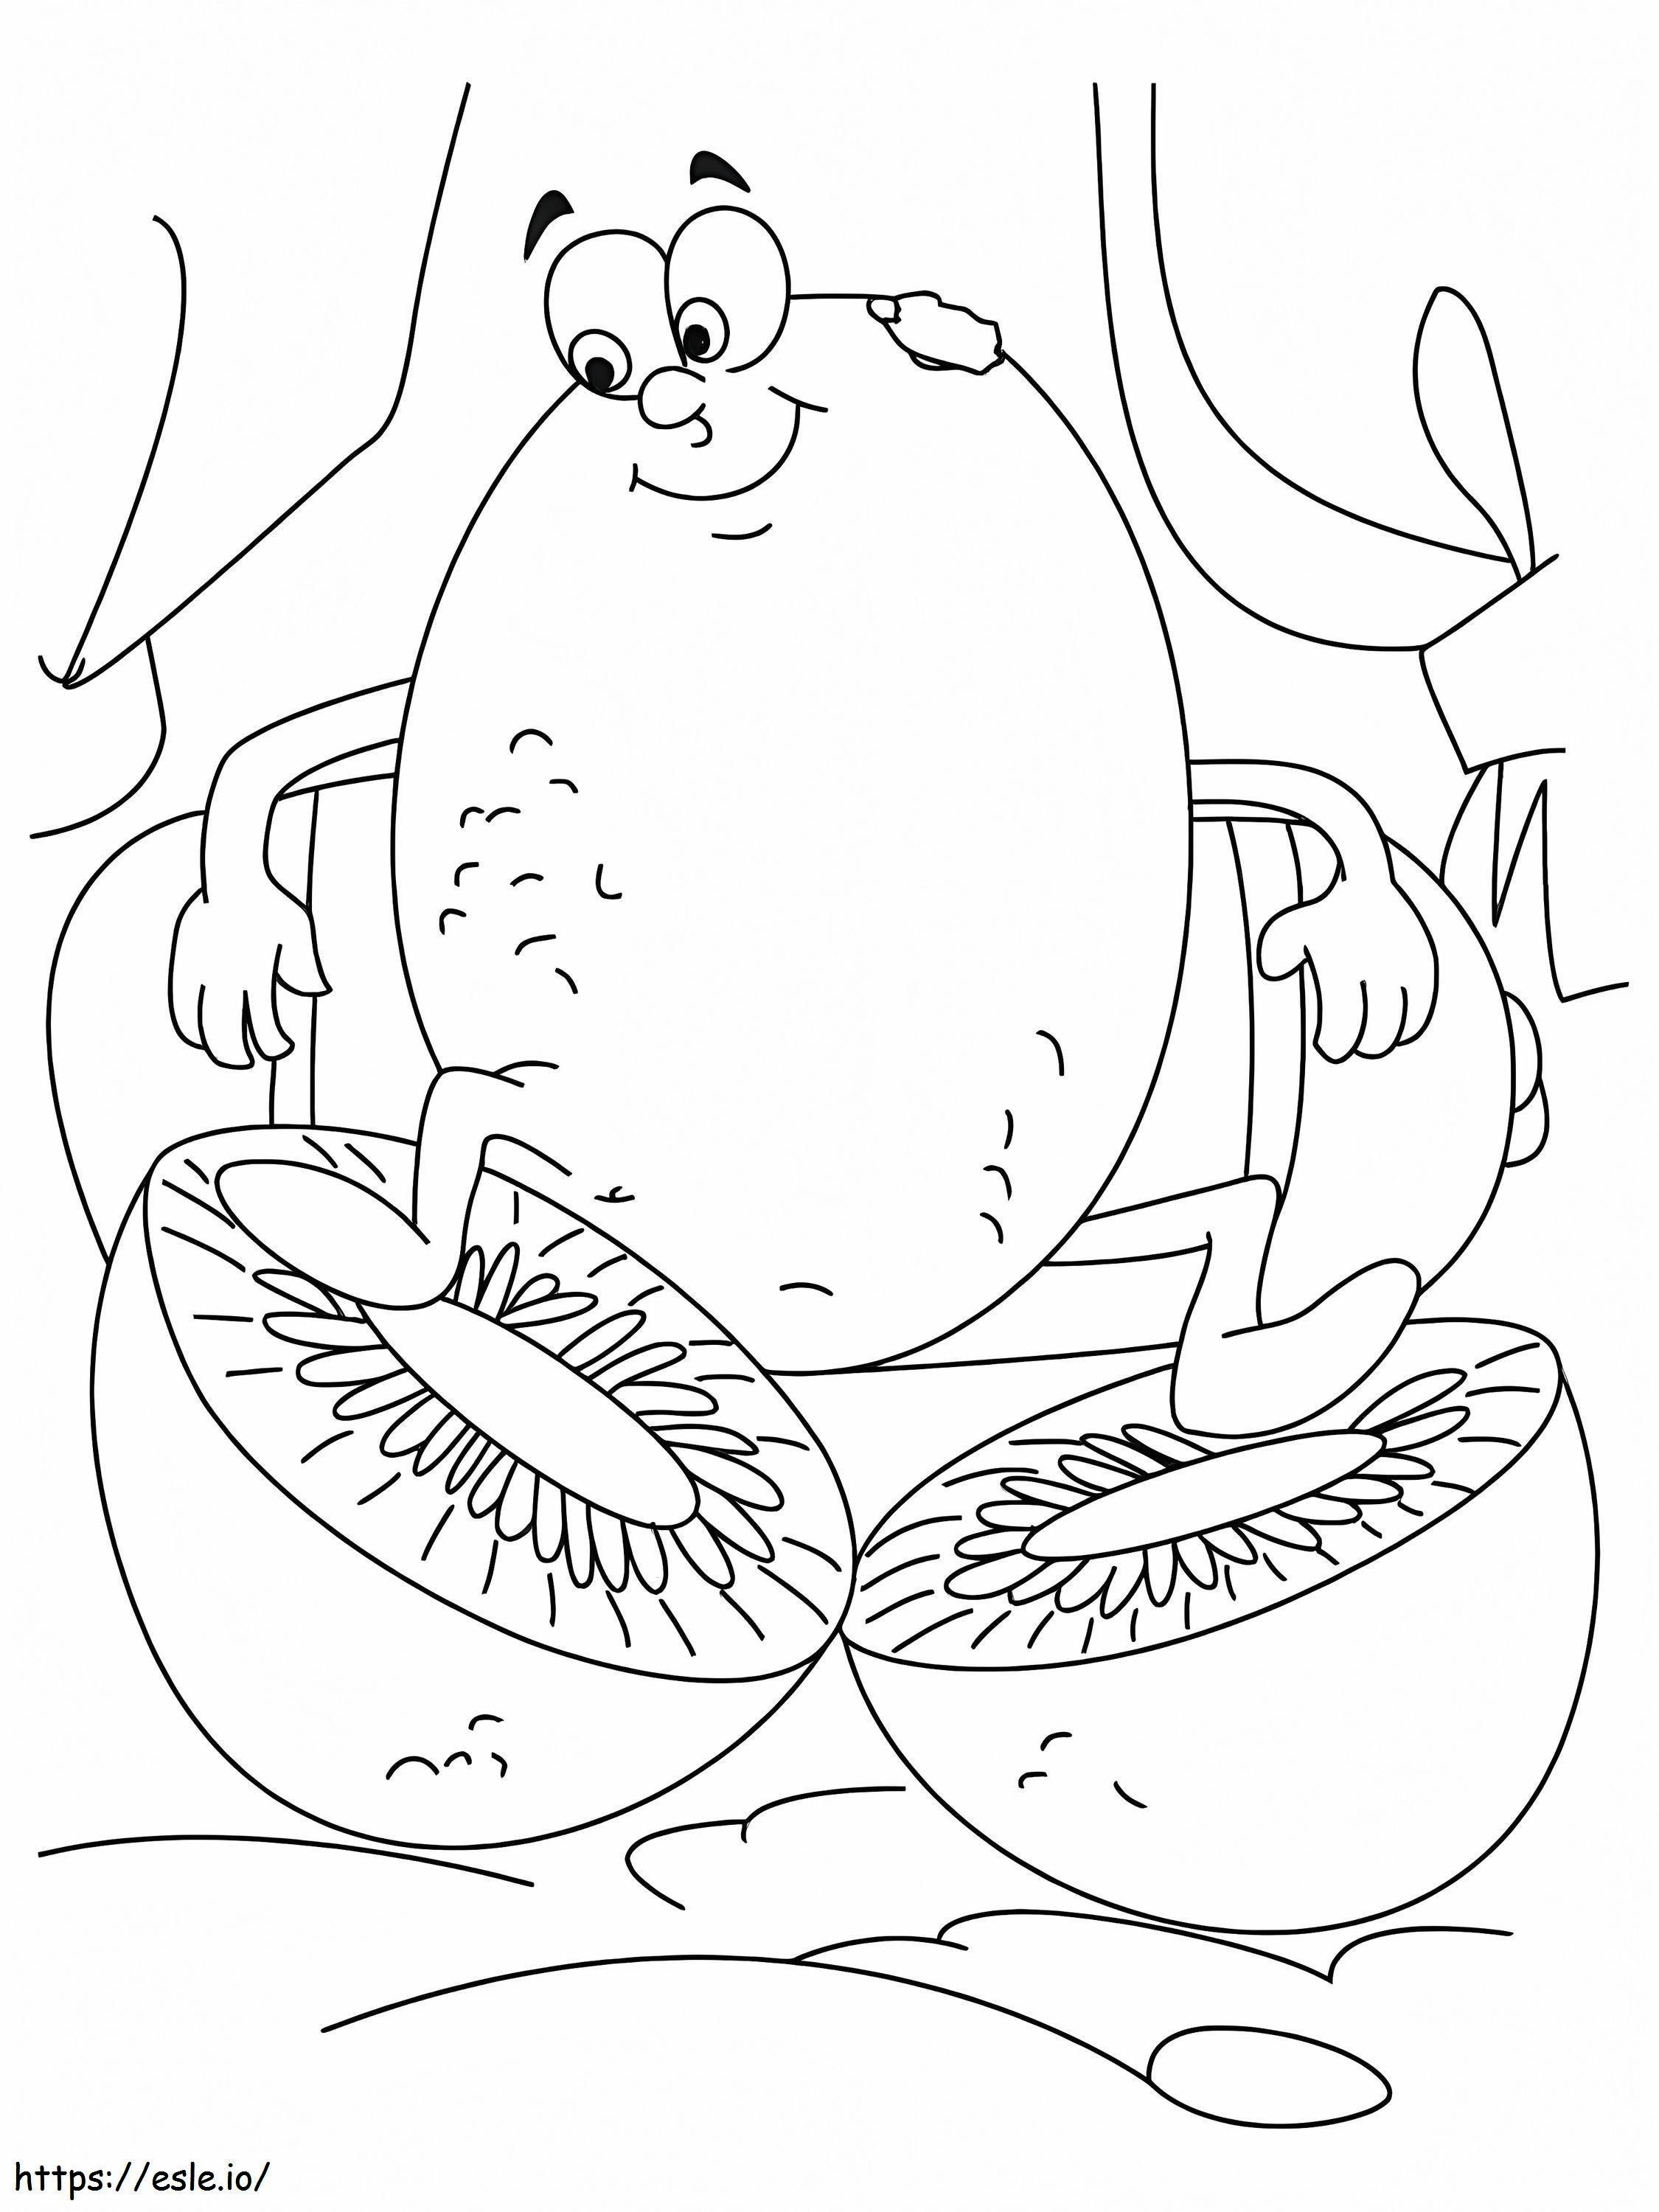 Uśmiechający się kreskówka kiwi kolorowanka